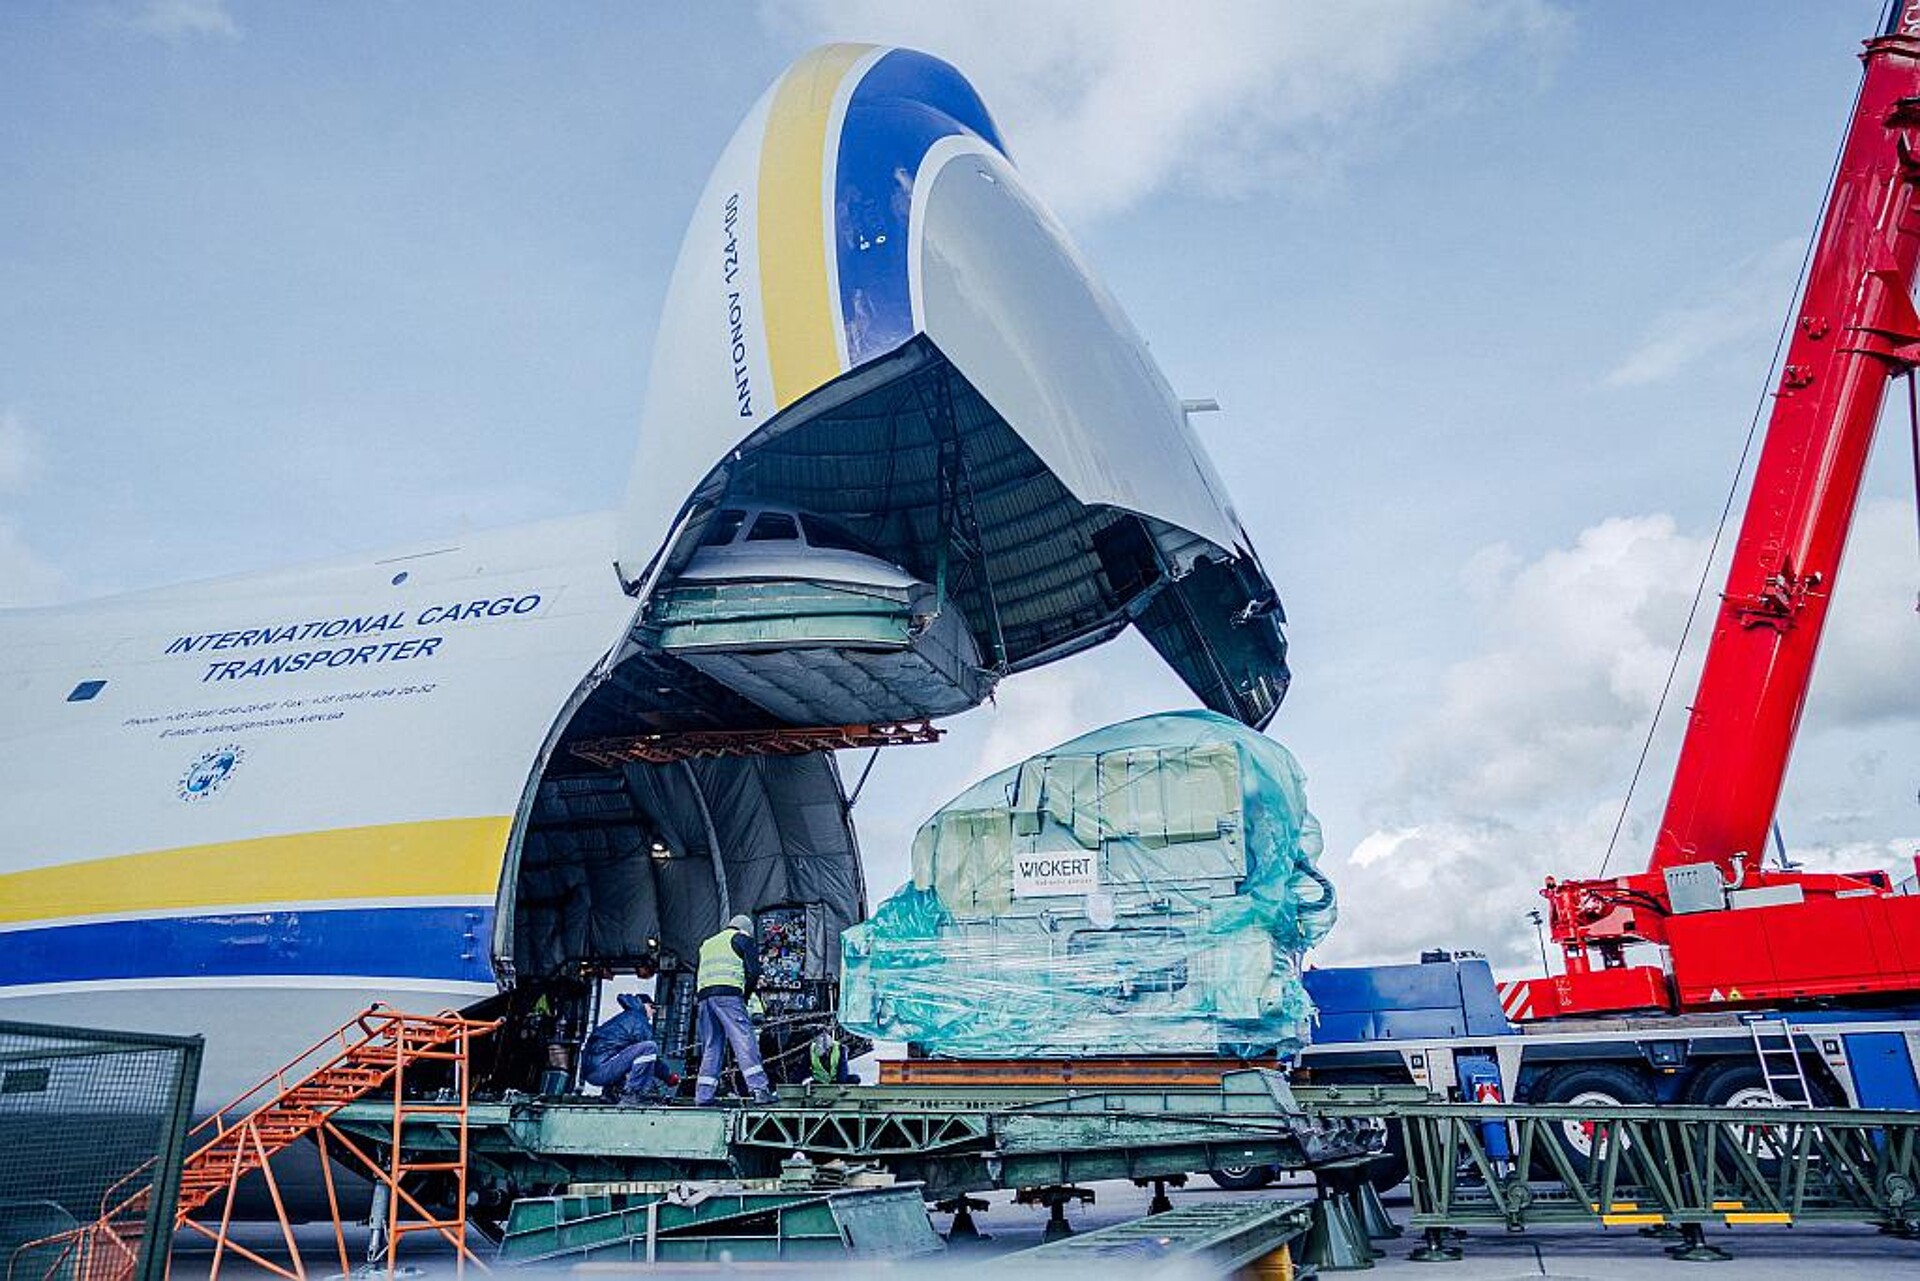 Die ersten acht Pressen wurden mit der Antonov, dem größten Flugzeug der Welt, zu den Kunden geflogen. (Foto: Wickert)